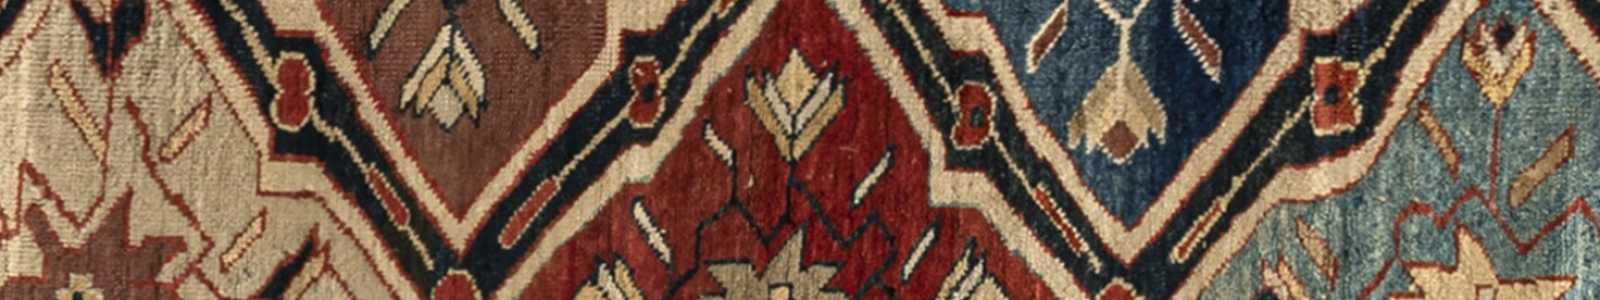 793 | Sammlerteppiche, Tribal Art & Orientalische Kunst